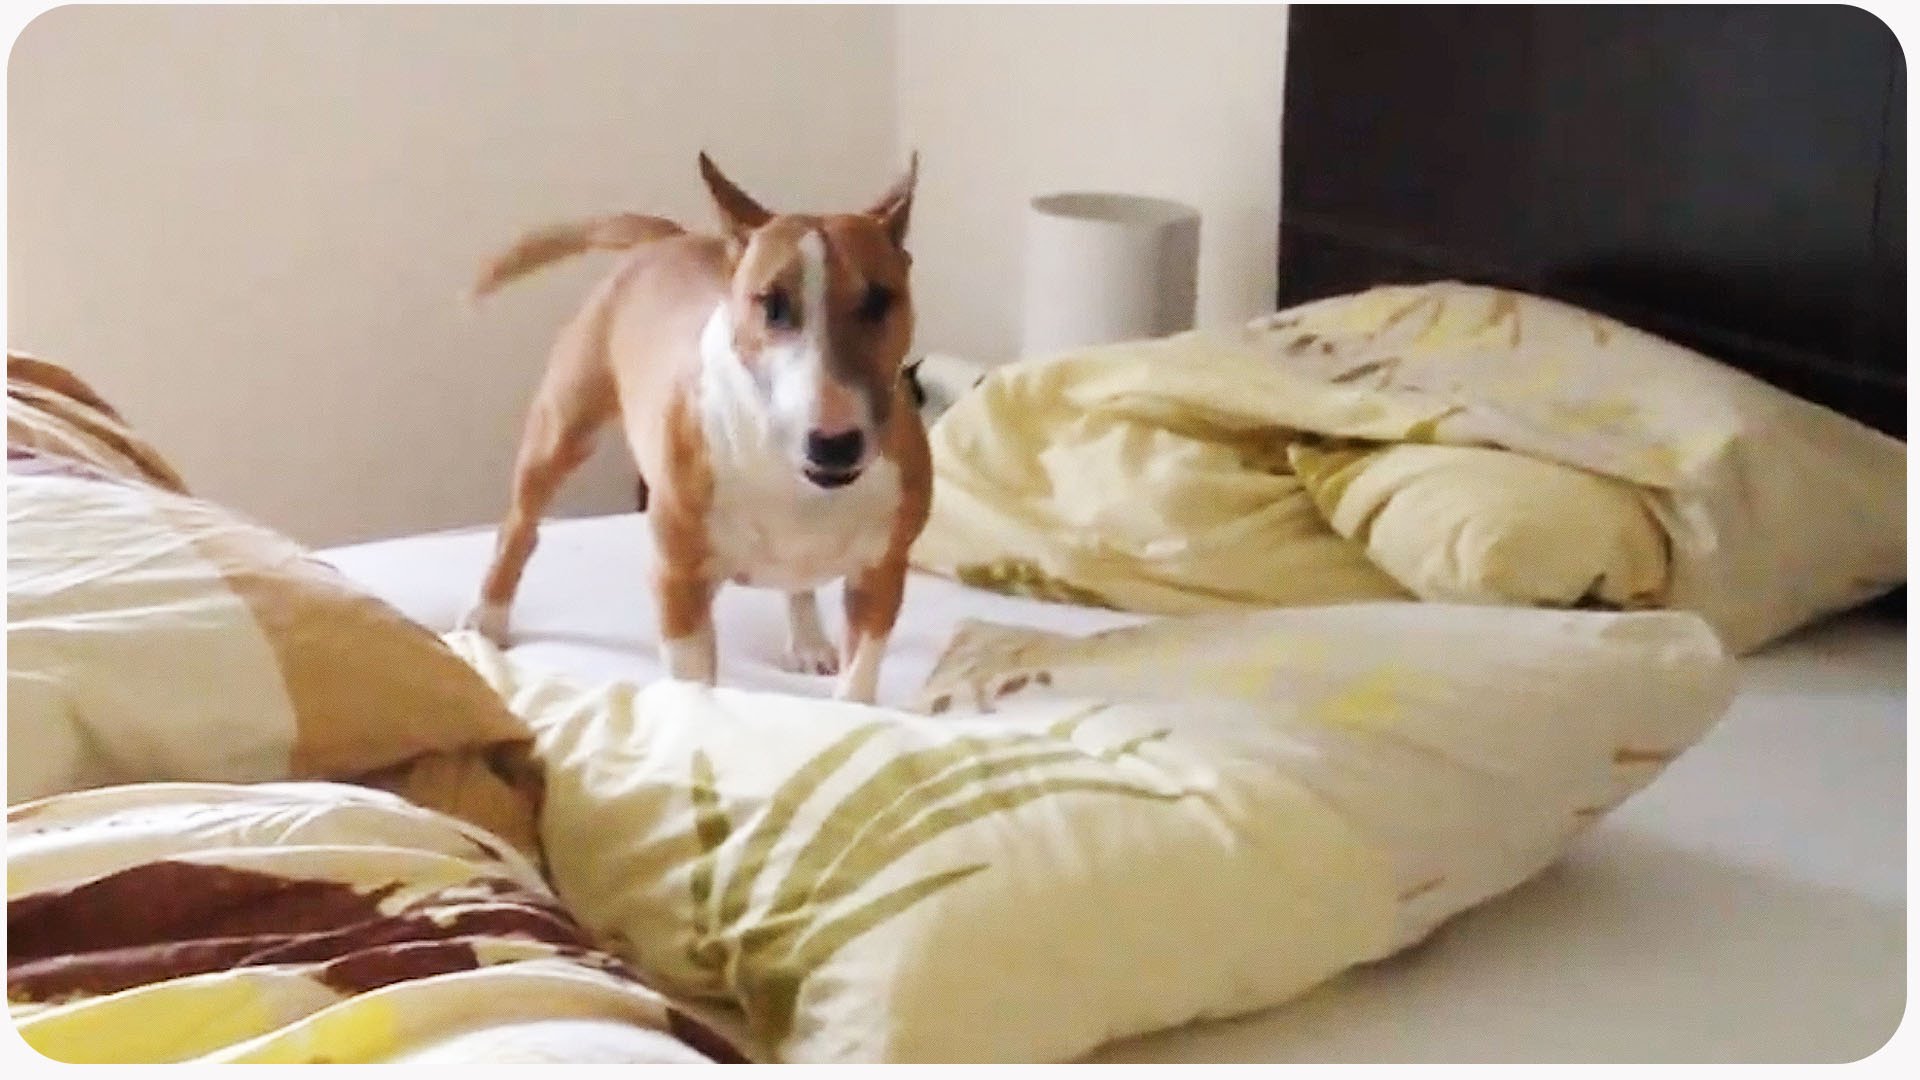 VIDEO: Tas brīdis, kad beidzot ir atļauts iekāpt gultā! (Funny Dog Goes Nuts | One Dog Circle Pit)